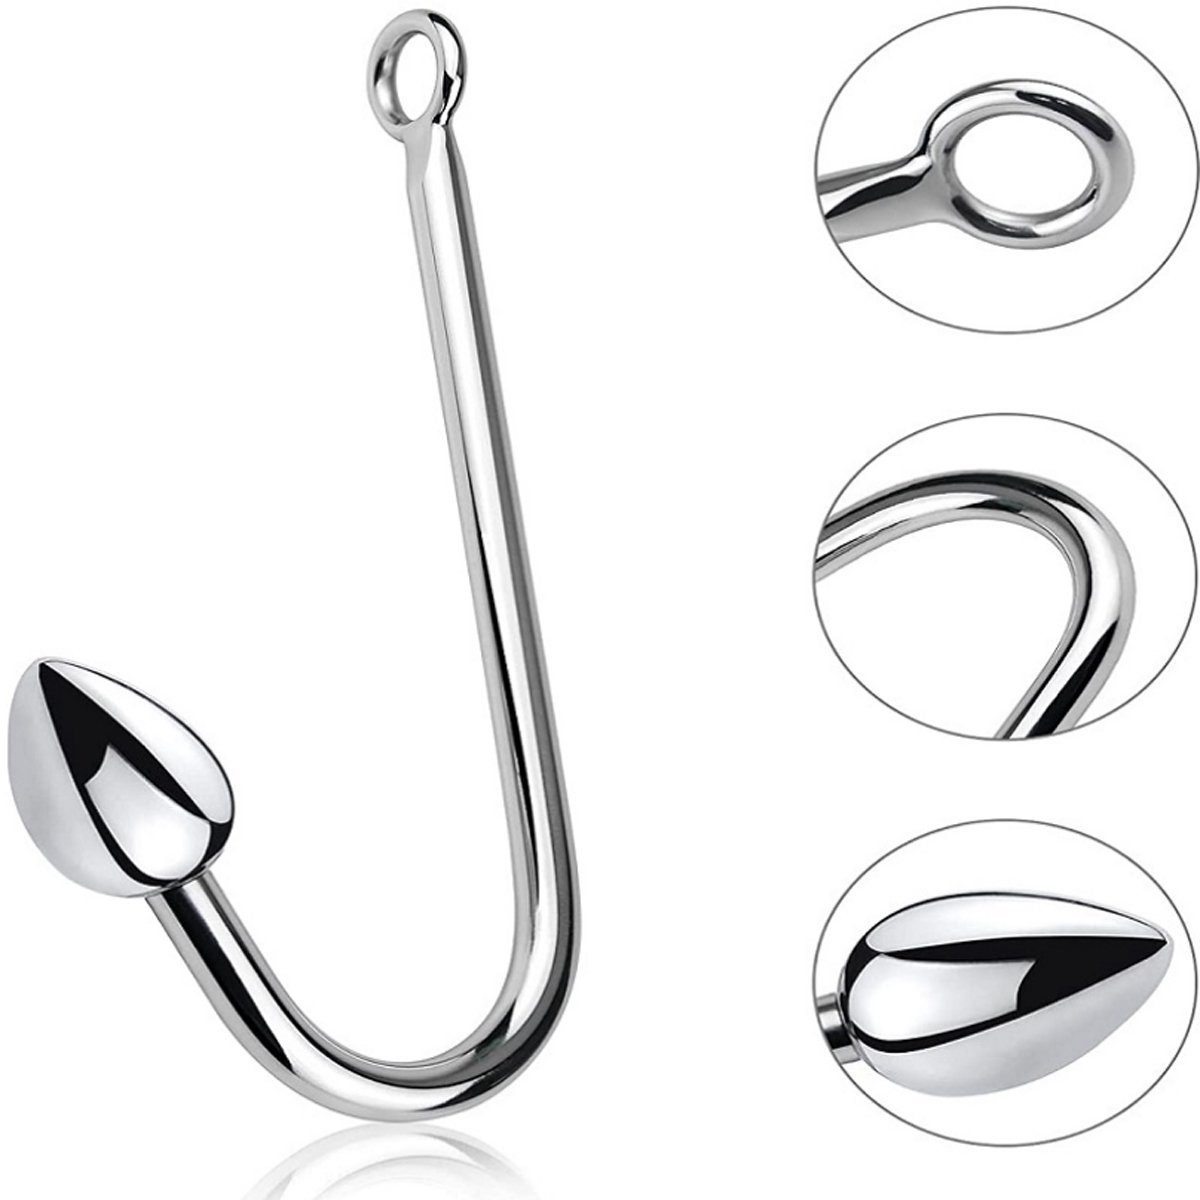 Haken Small Größe Kugel: TPFSecret Haken, Metall Bondage Anal Hook mit und Fetisch Analhaken Ring Kugeln 2,65cm - Edelstahl Anal